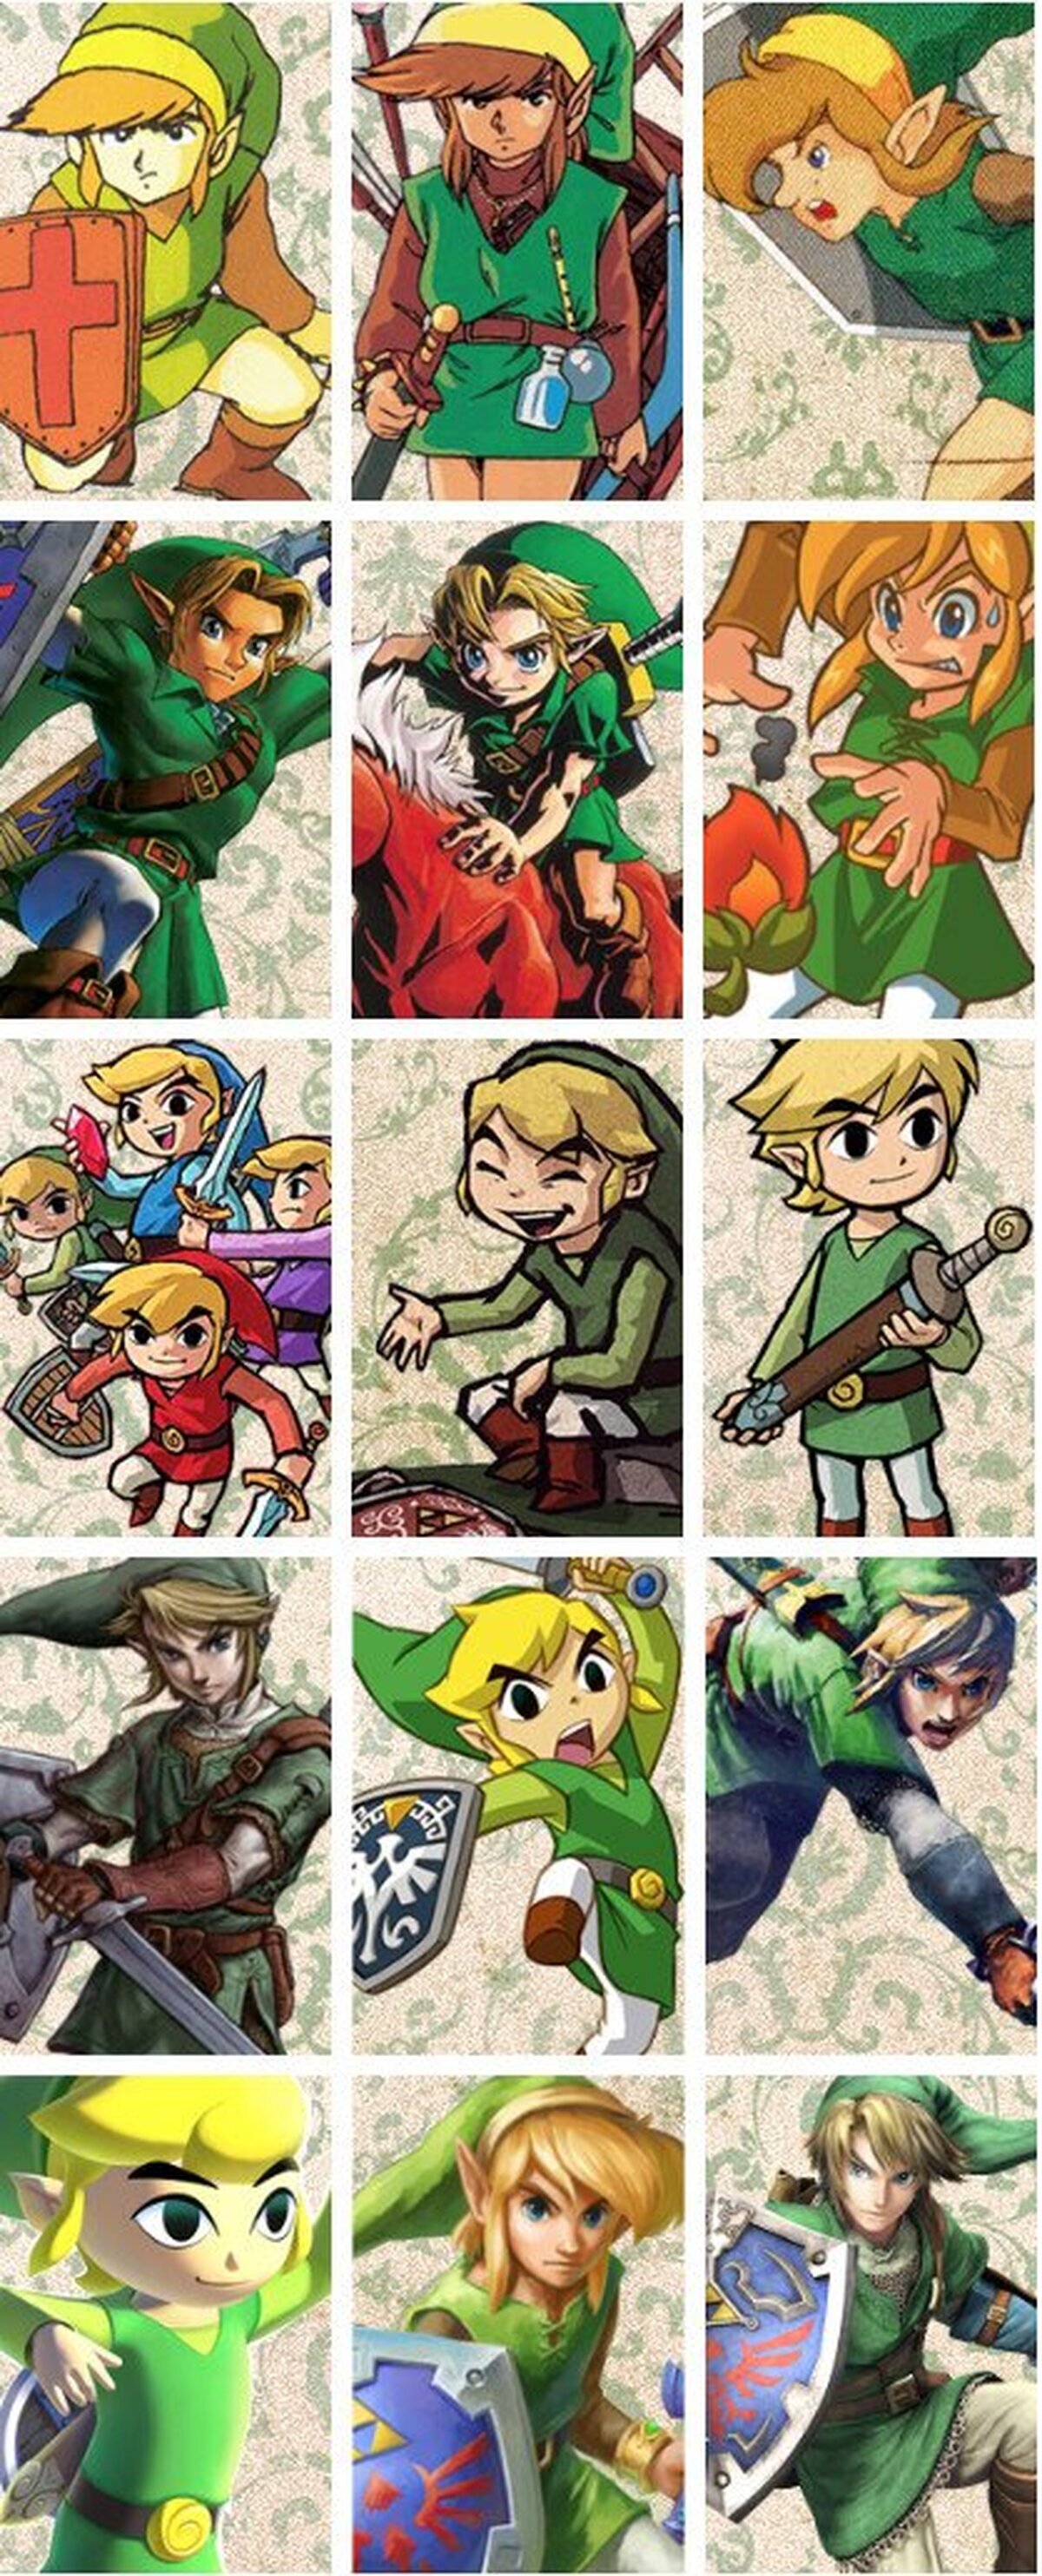 ¿Cuál es tu Link favorito?